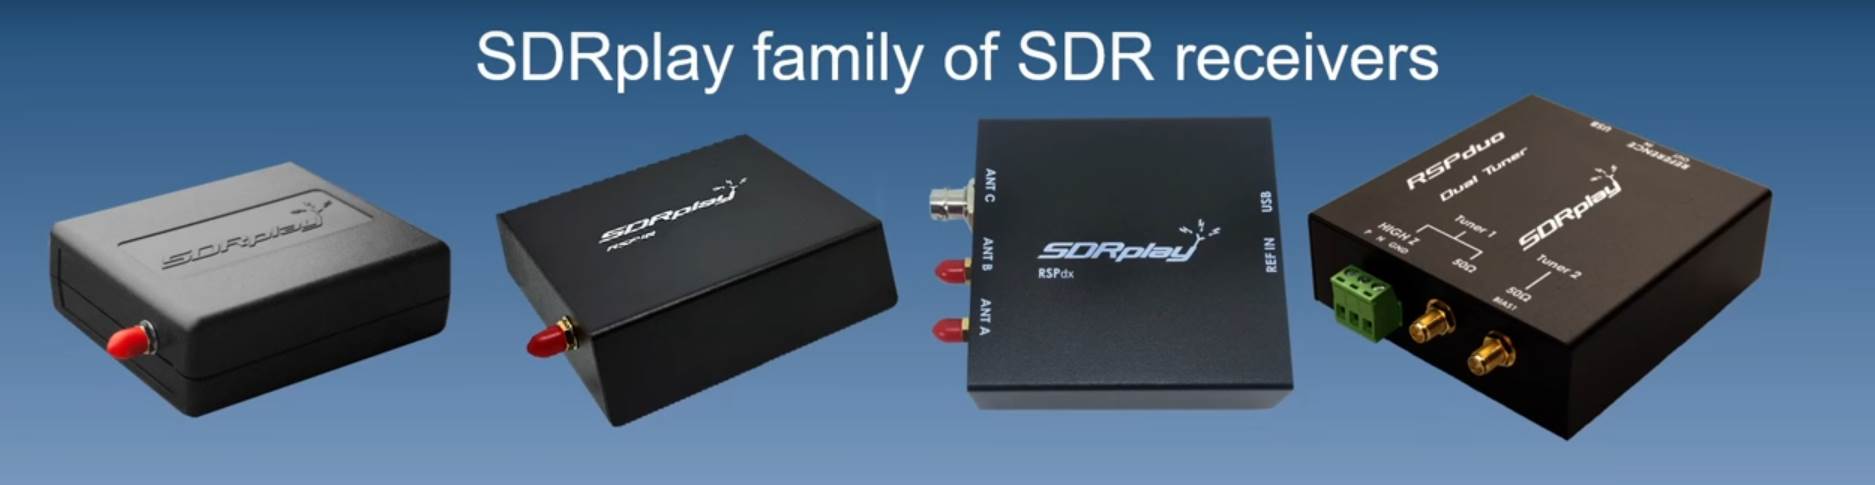 SDRplay stellt den SDR-Empfänger RSP1B vor